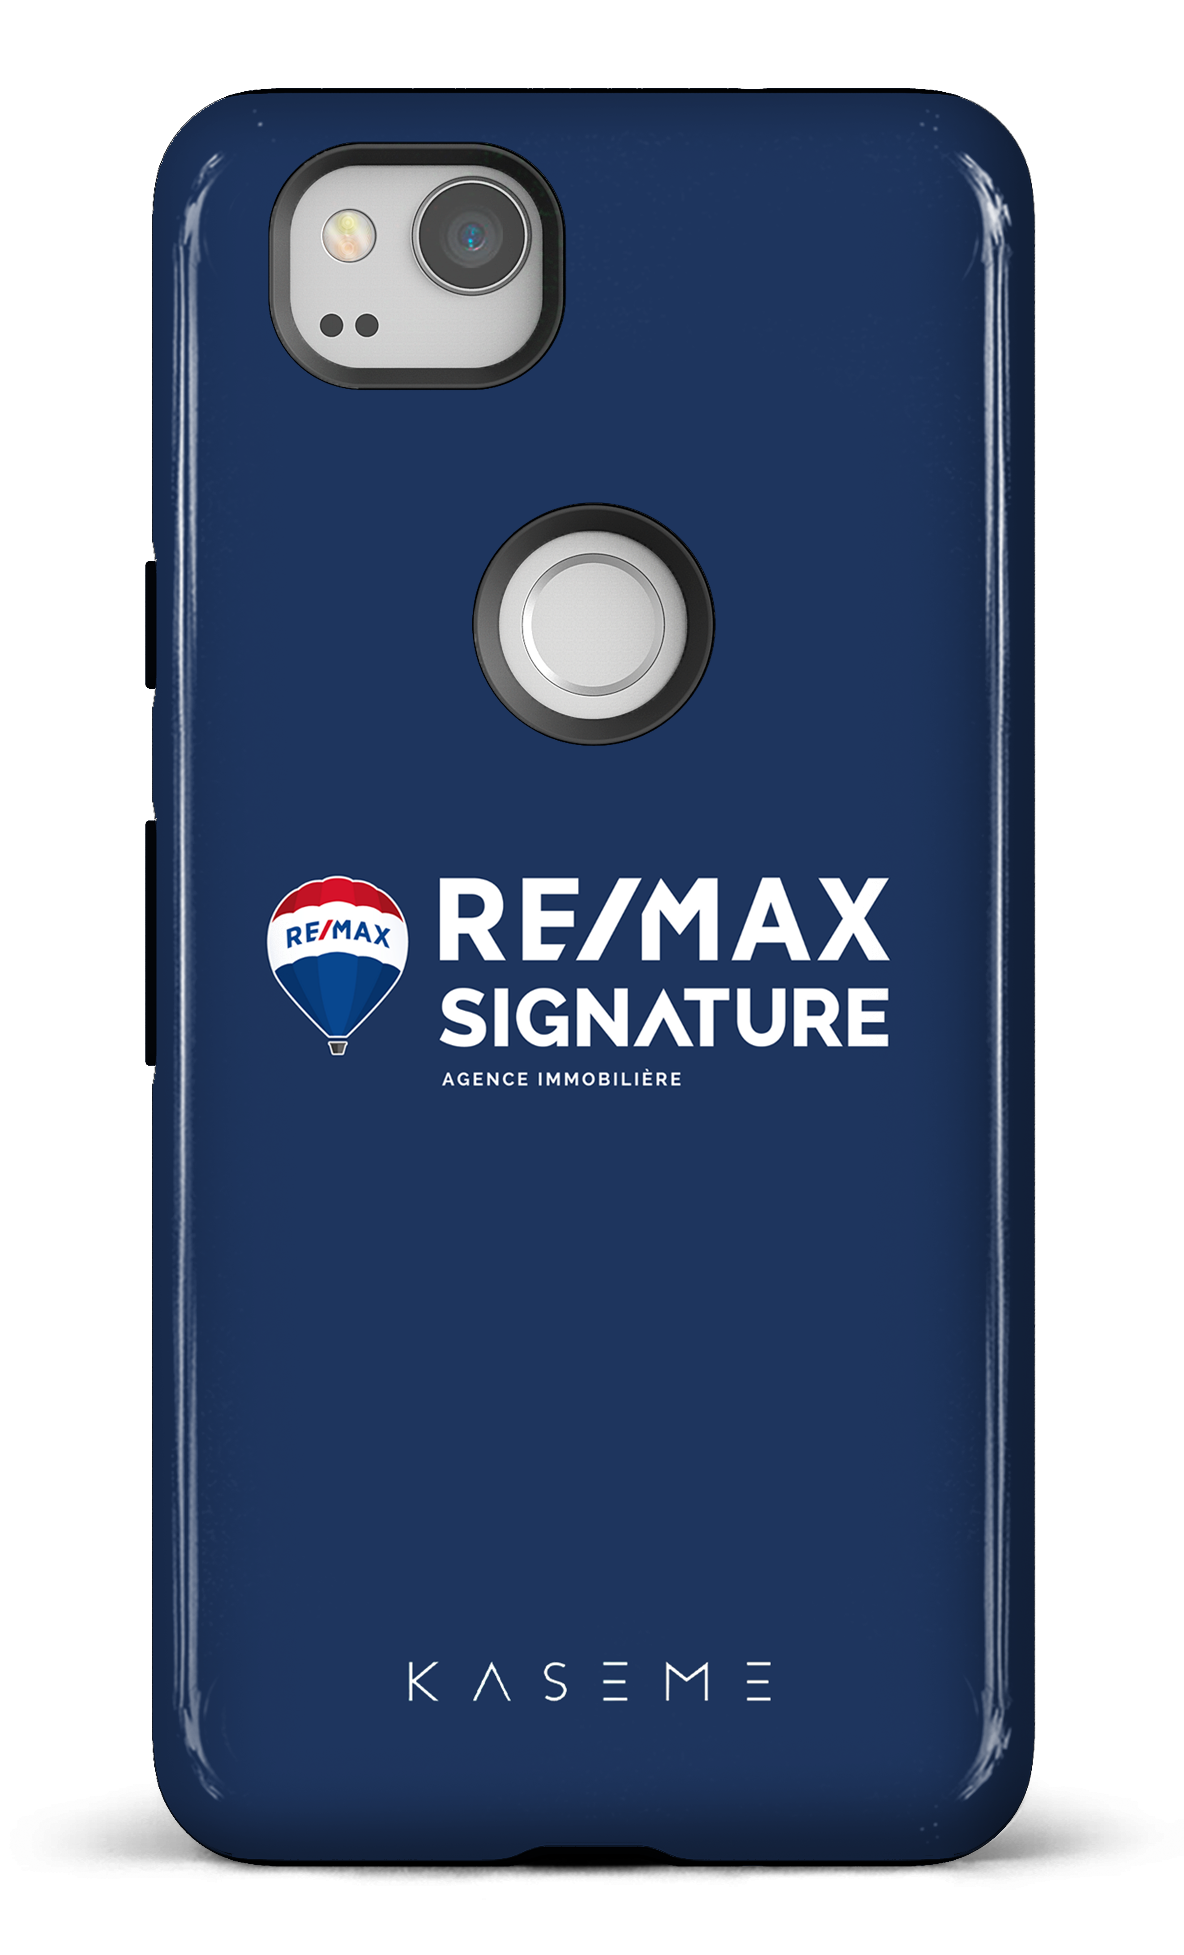 Remax Signature Bleu - Google Pixel 2